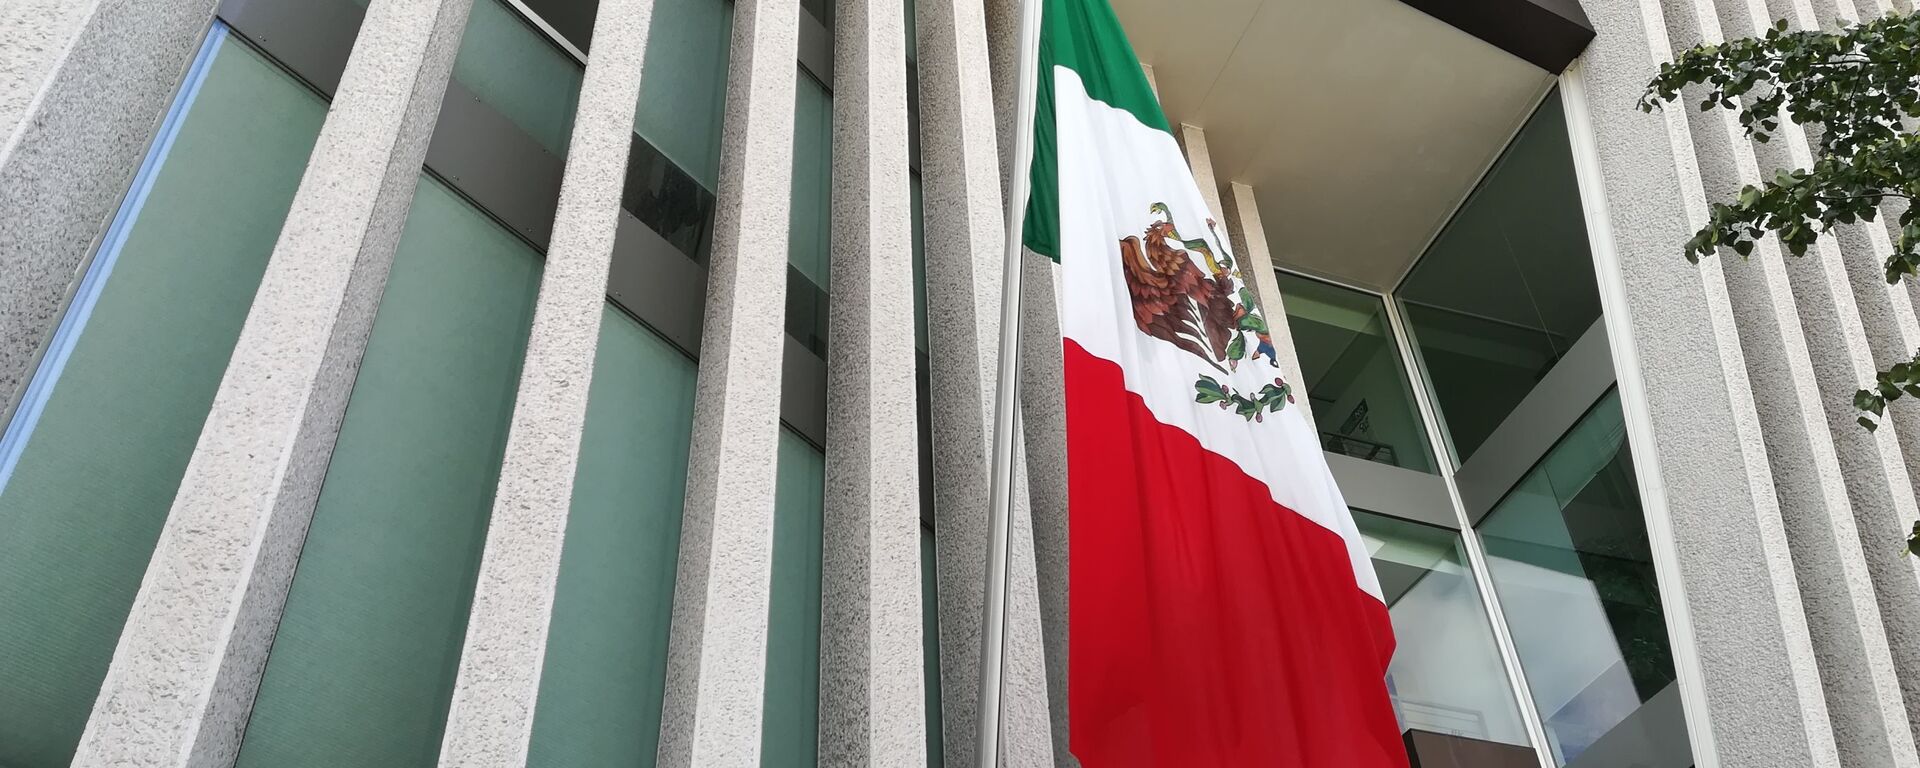 Bandera de México - Sputnik Mundo, 1920, 13.10.2020